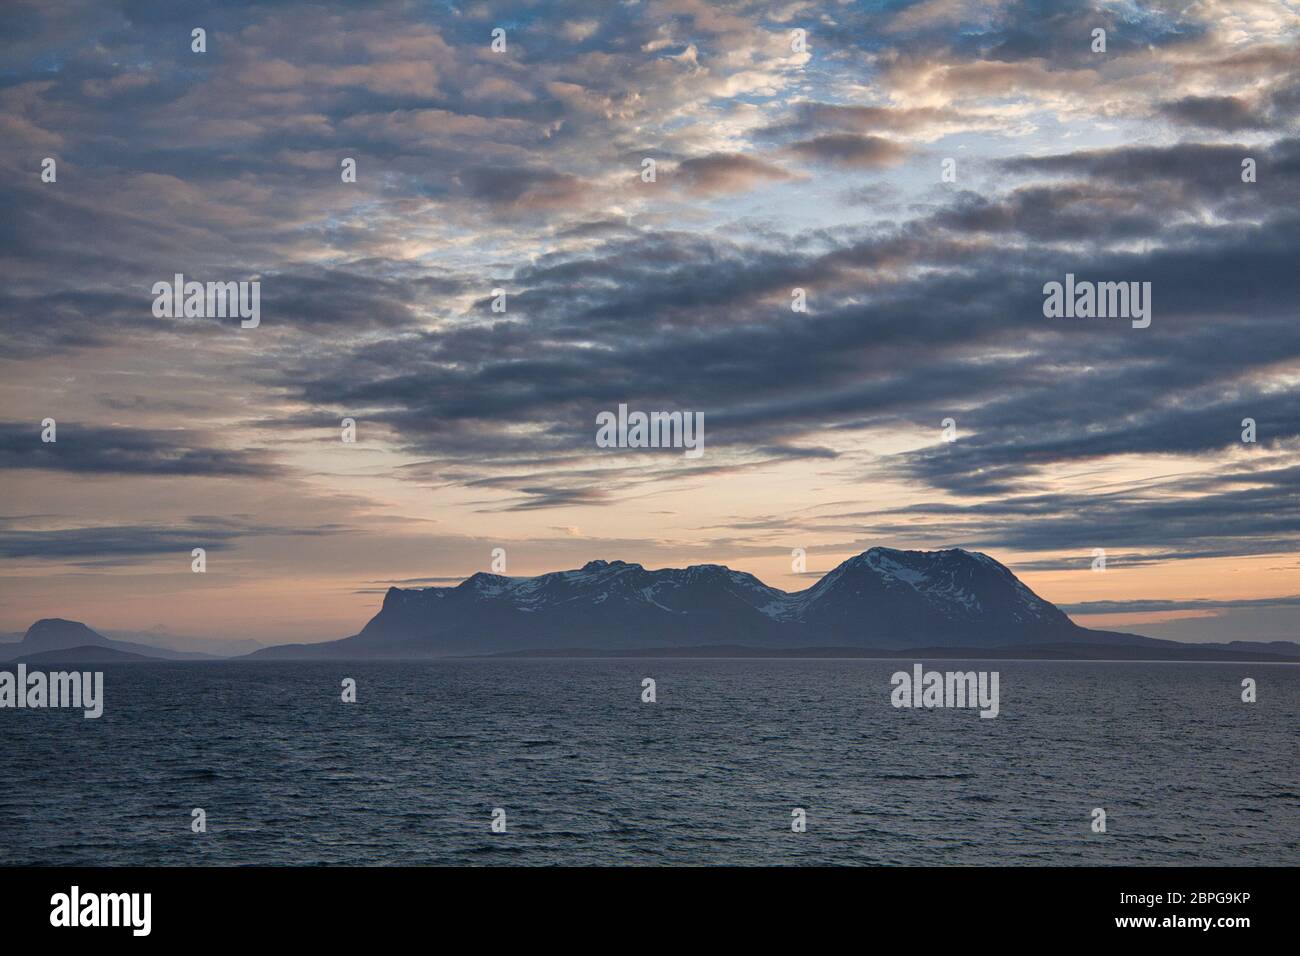 Îles au large de la côte ouest de la Norvège septentrionale, vues par la lumière du soleil de minuit avec un ciel et des nuages spectaculaires Banque D'Images